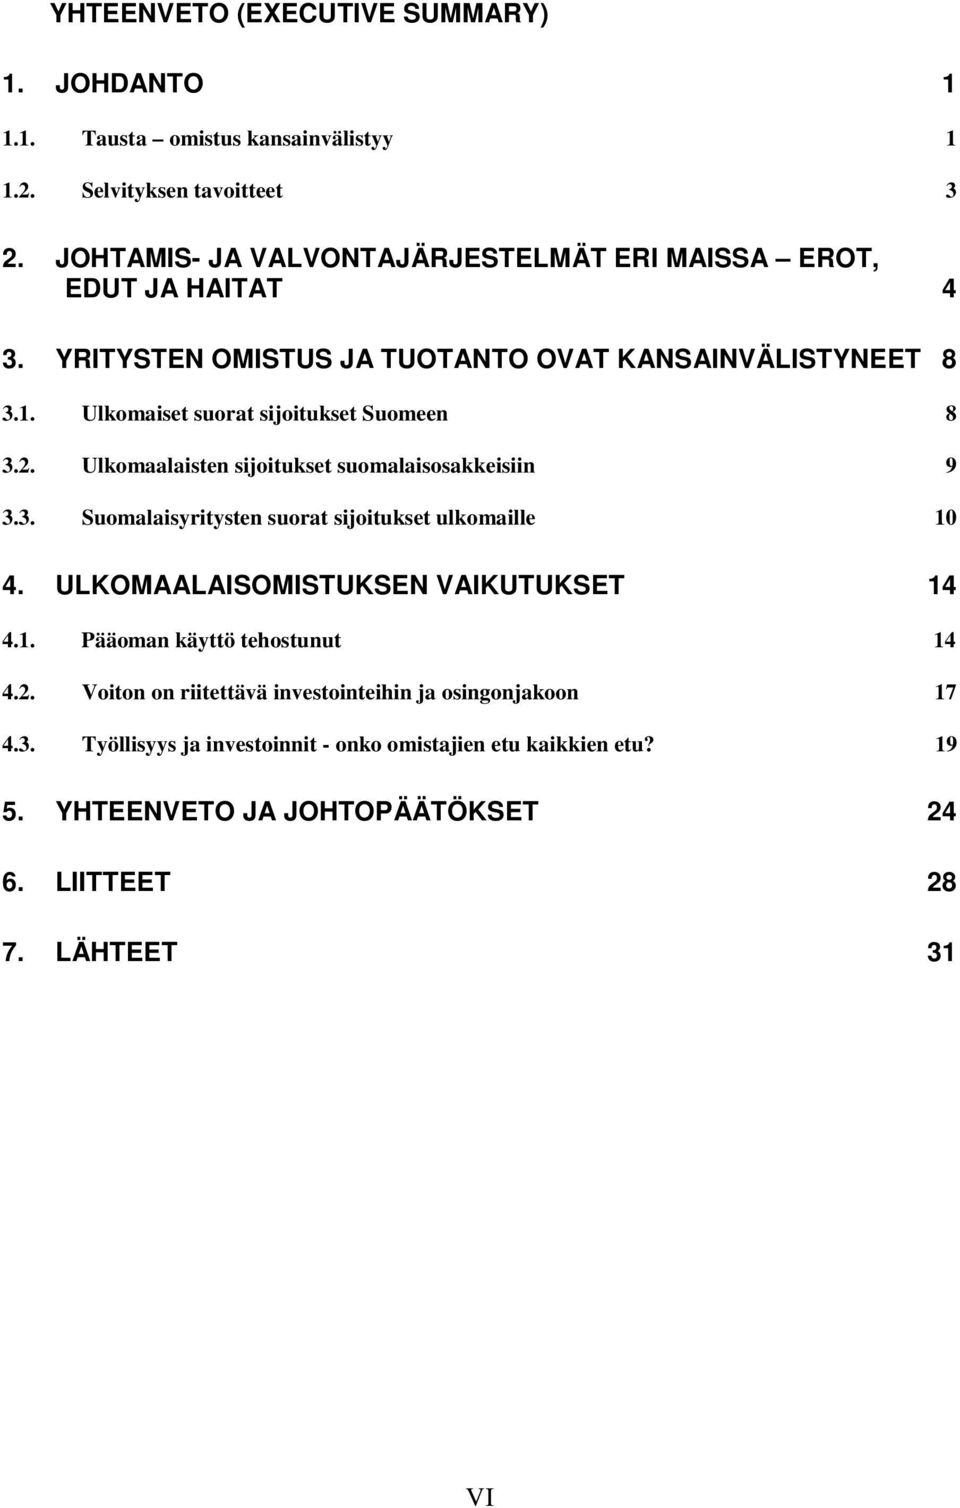 Ulkomaiset suorat sijoitukset Suomeen 8 3.2. Ulkomaalaisten sijoitukset suomalaisosakkeisiin 9 3.3. Suomalaisyritysten suorat sijoitukset ulkomaille 10 4.